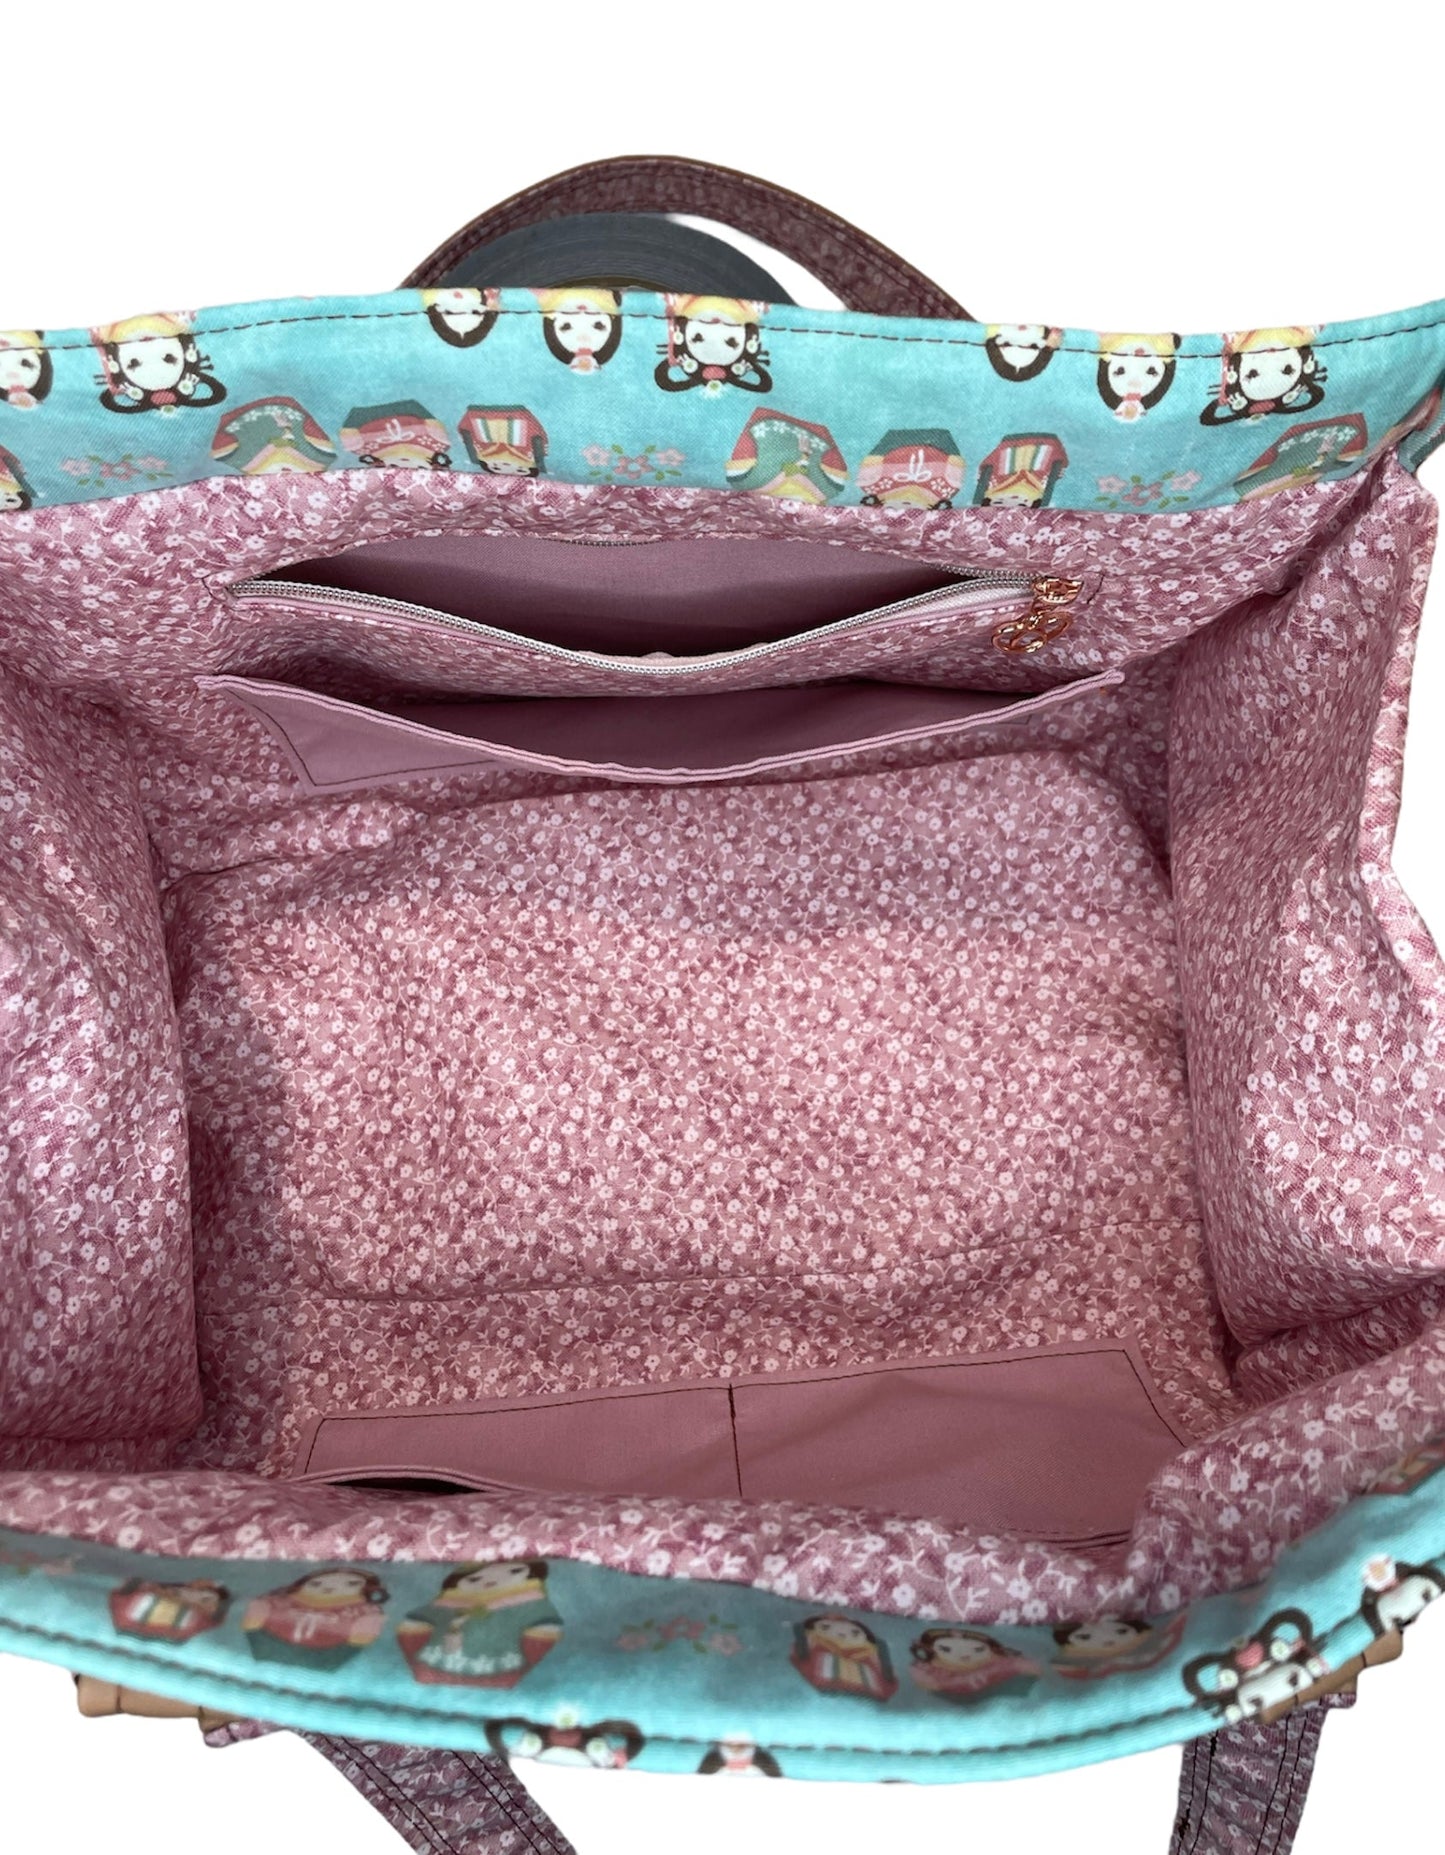 The Happy Handbag - Custom Made